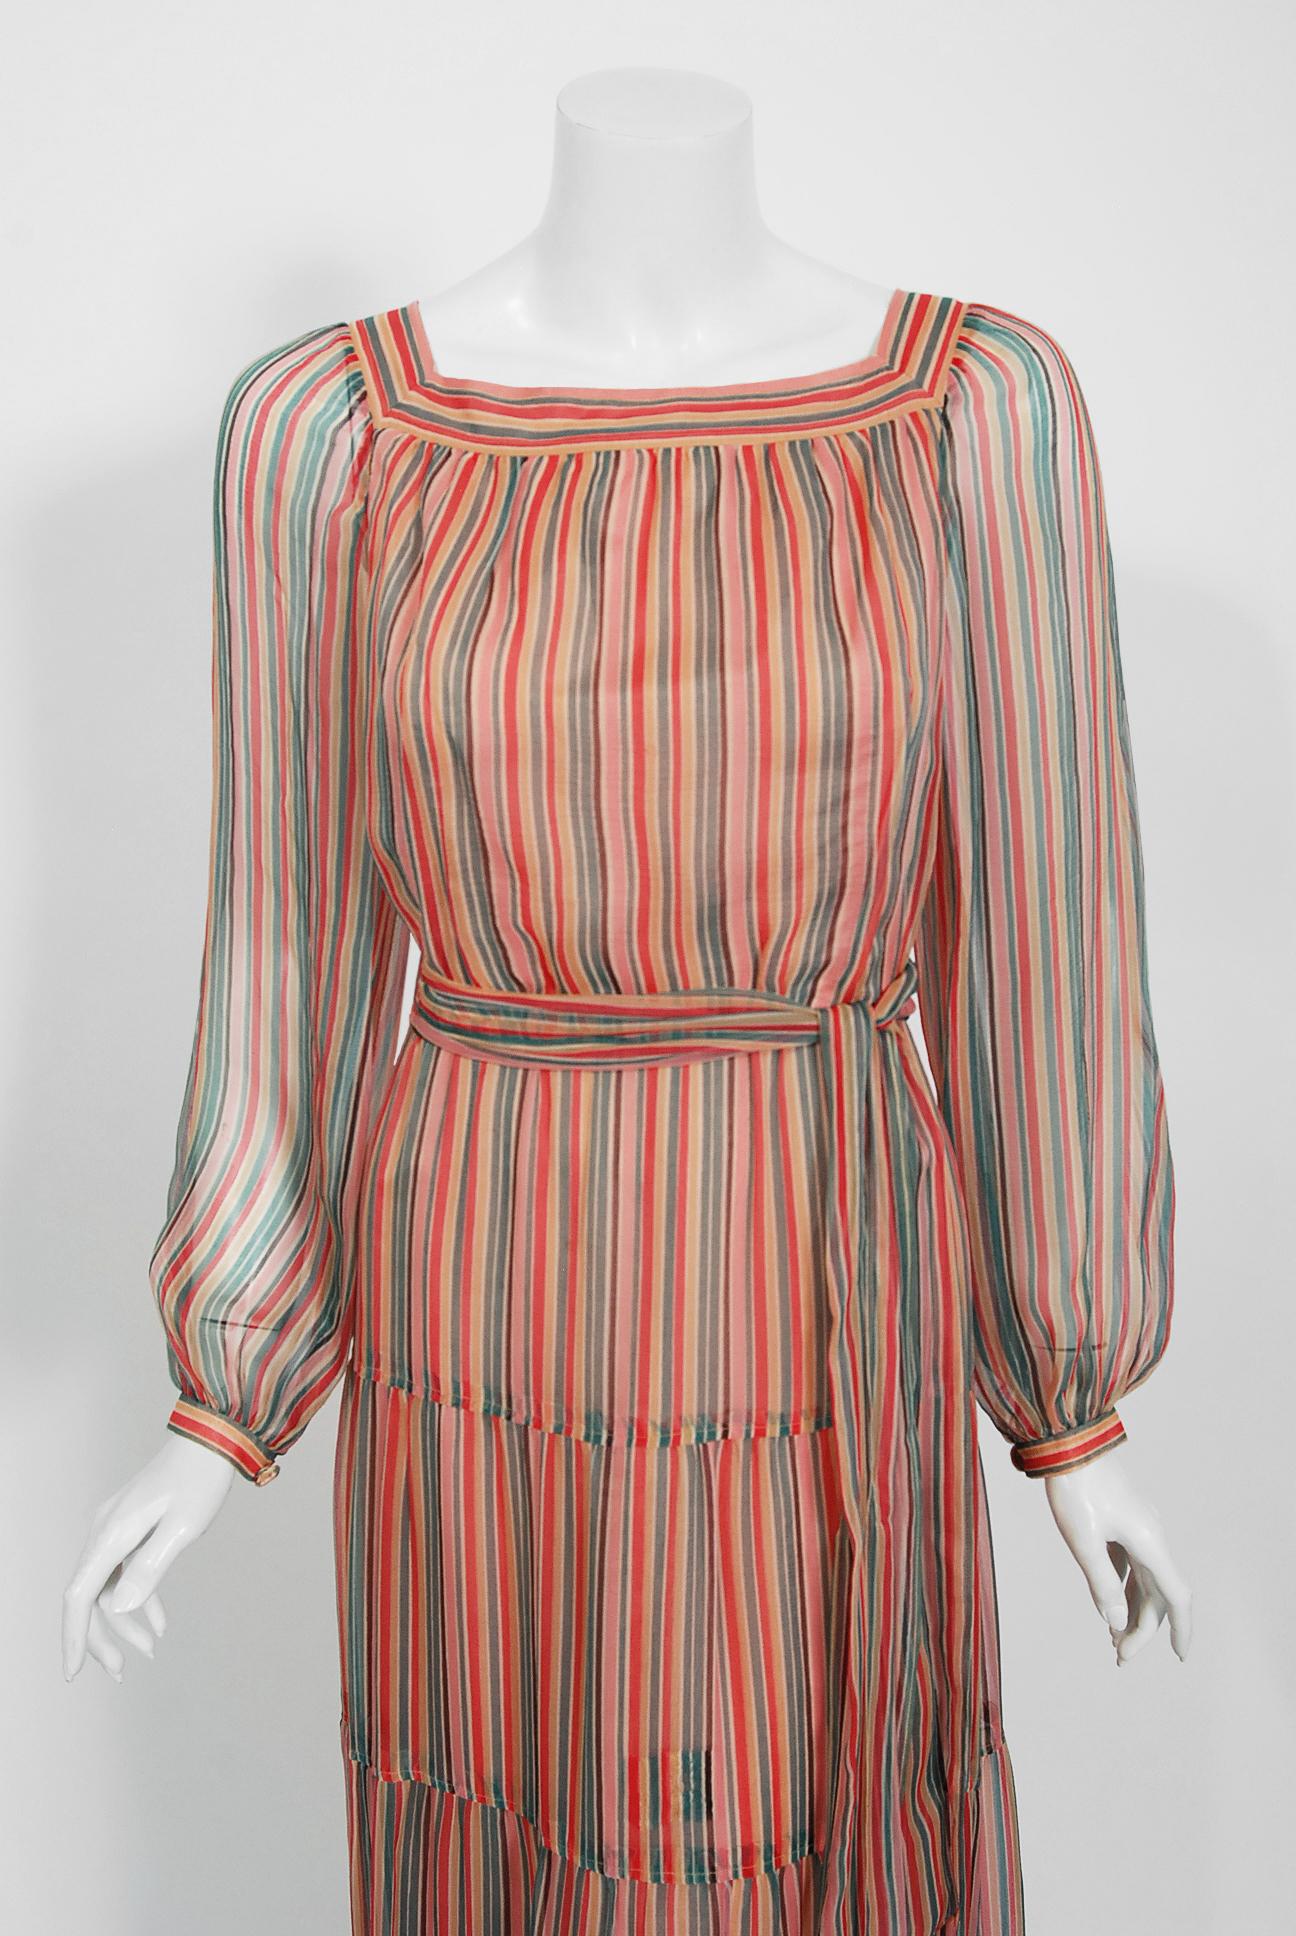 Marron Givenchy - Robe bohème à manches bohème, en mousseline de soie à rayures colorées, années 1970 en vente